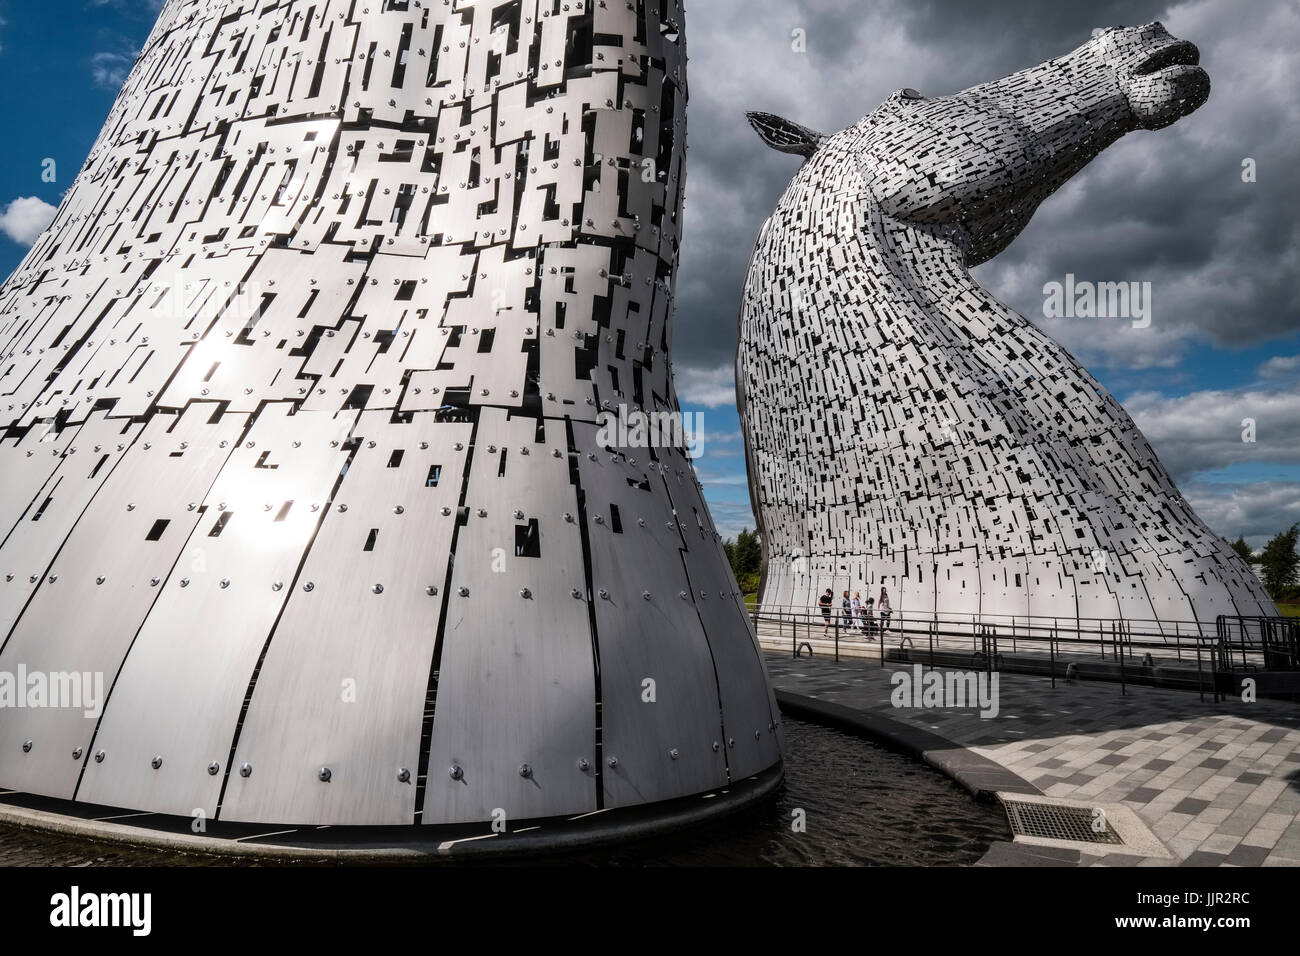 Die Kelpies Skulpturen im Helix Park, Falkirk, Schottland, Großbritannien. Stockfoto